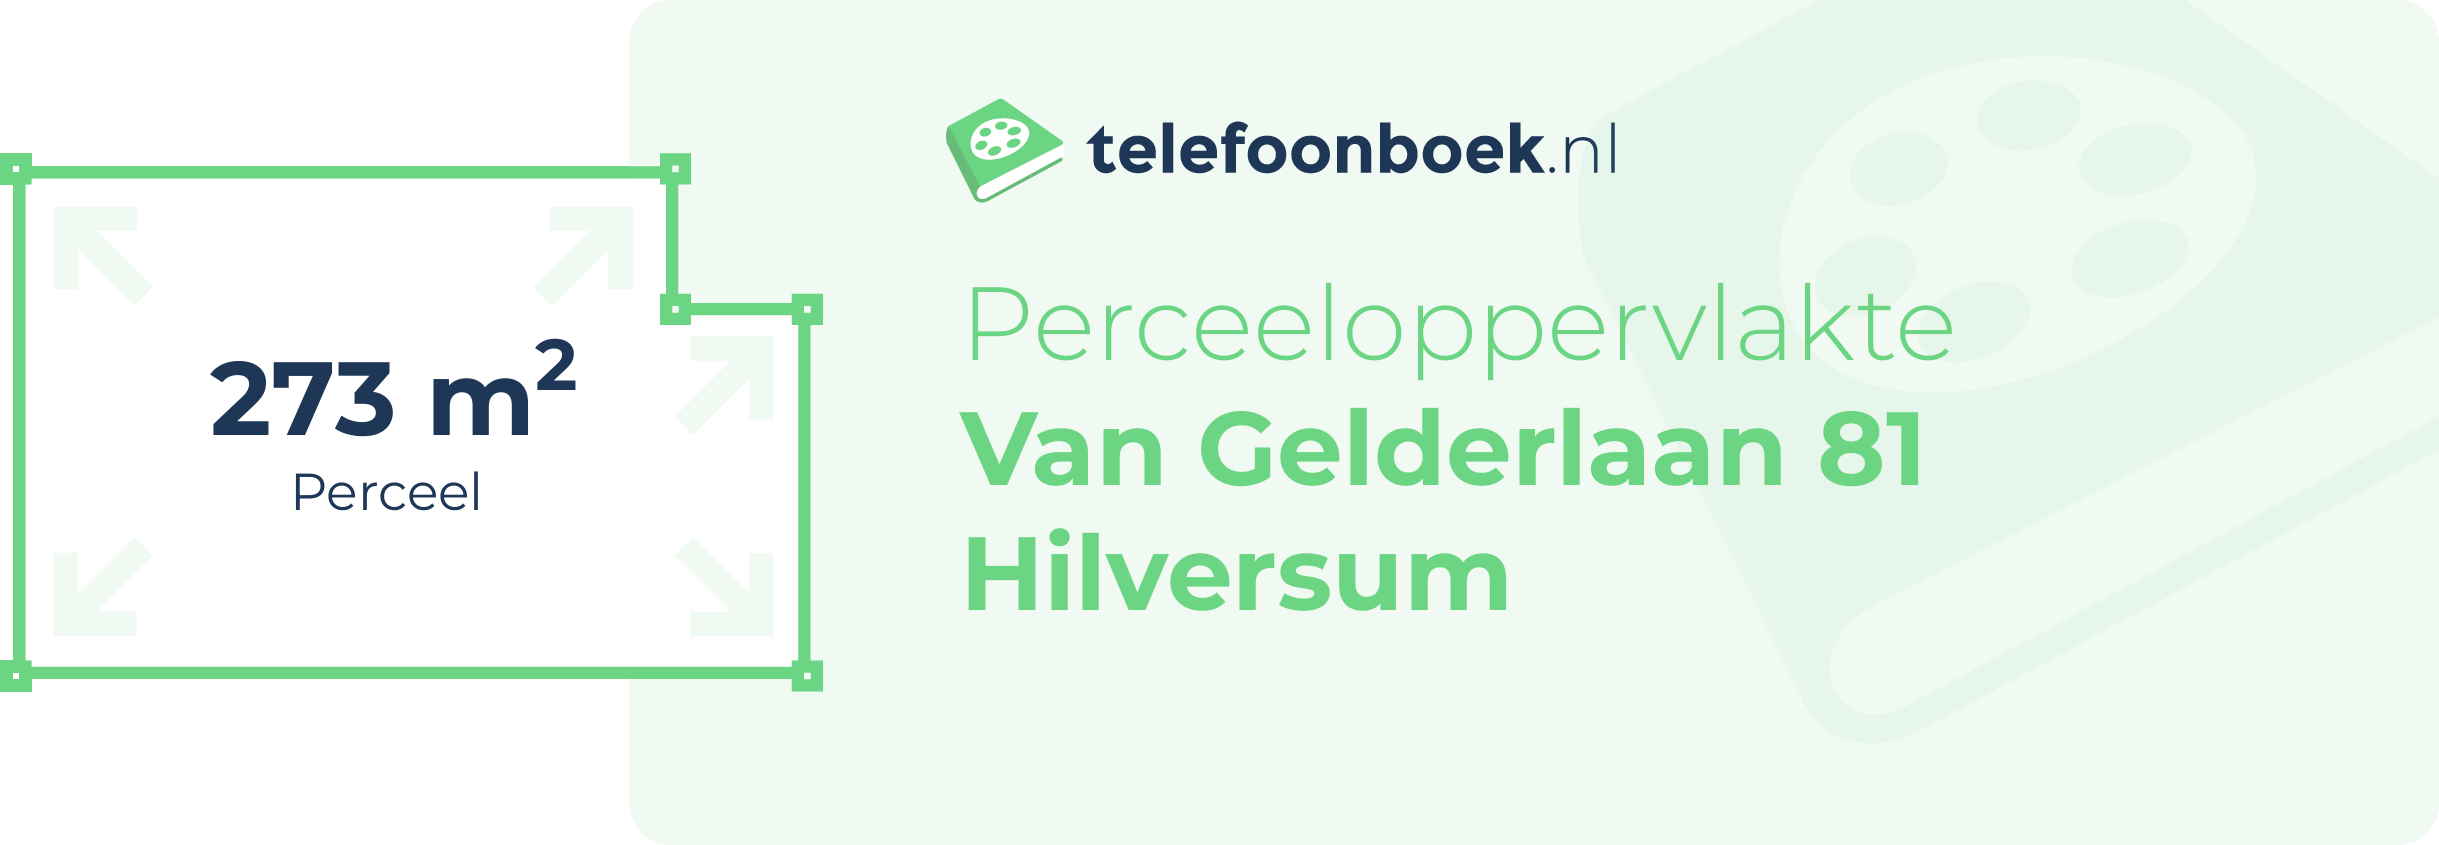 Perceeloppervlakte Van Gelderlaan 81 Hilversum